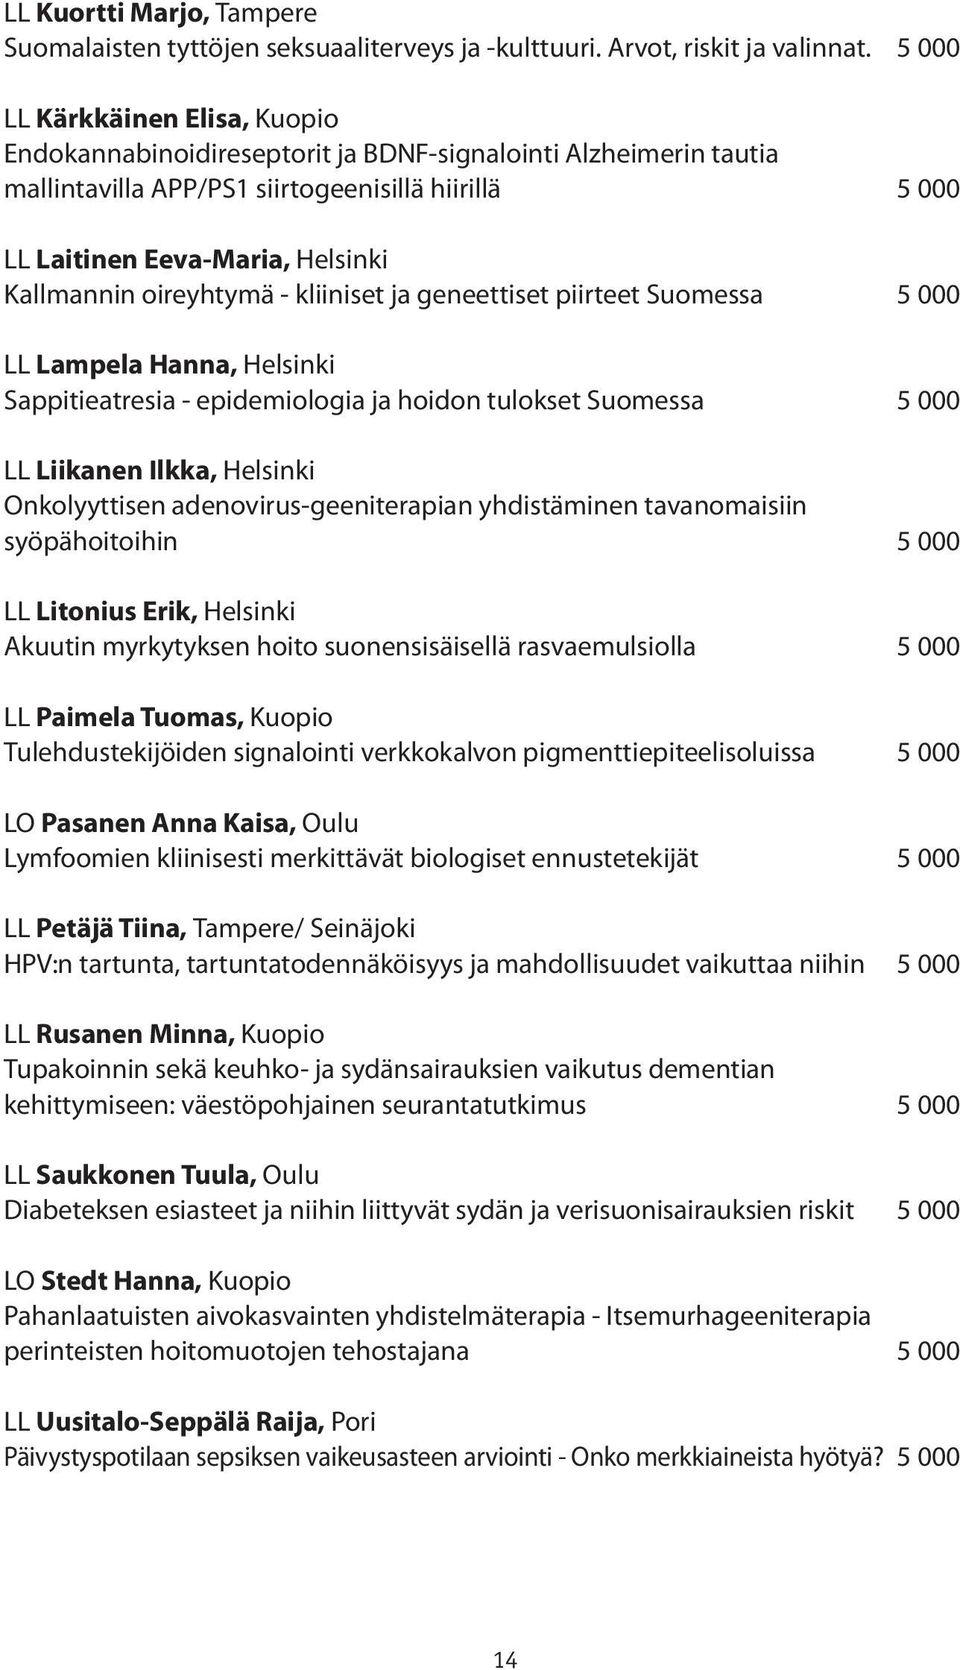 oireyhtymä - kliiniset ja geneettiset piirteet Suomessa 5 000 LL Lampela Hanna, Helsinki Sappitieatresia - epidemiologia ja hoidon tulokset Suomessa 5 000 LL Liikanen Ilkka, Helsinki Onkolyyttisen